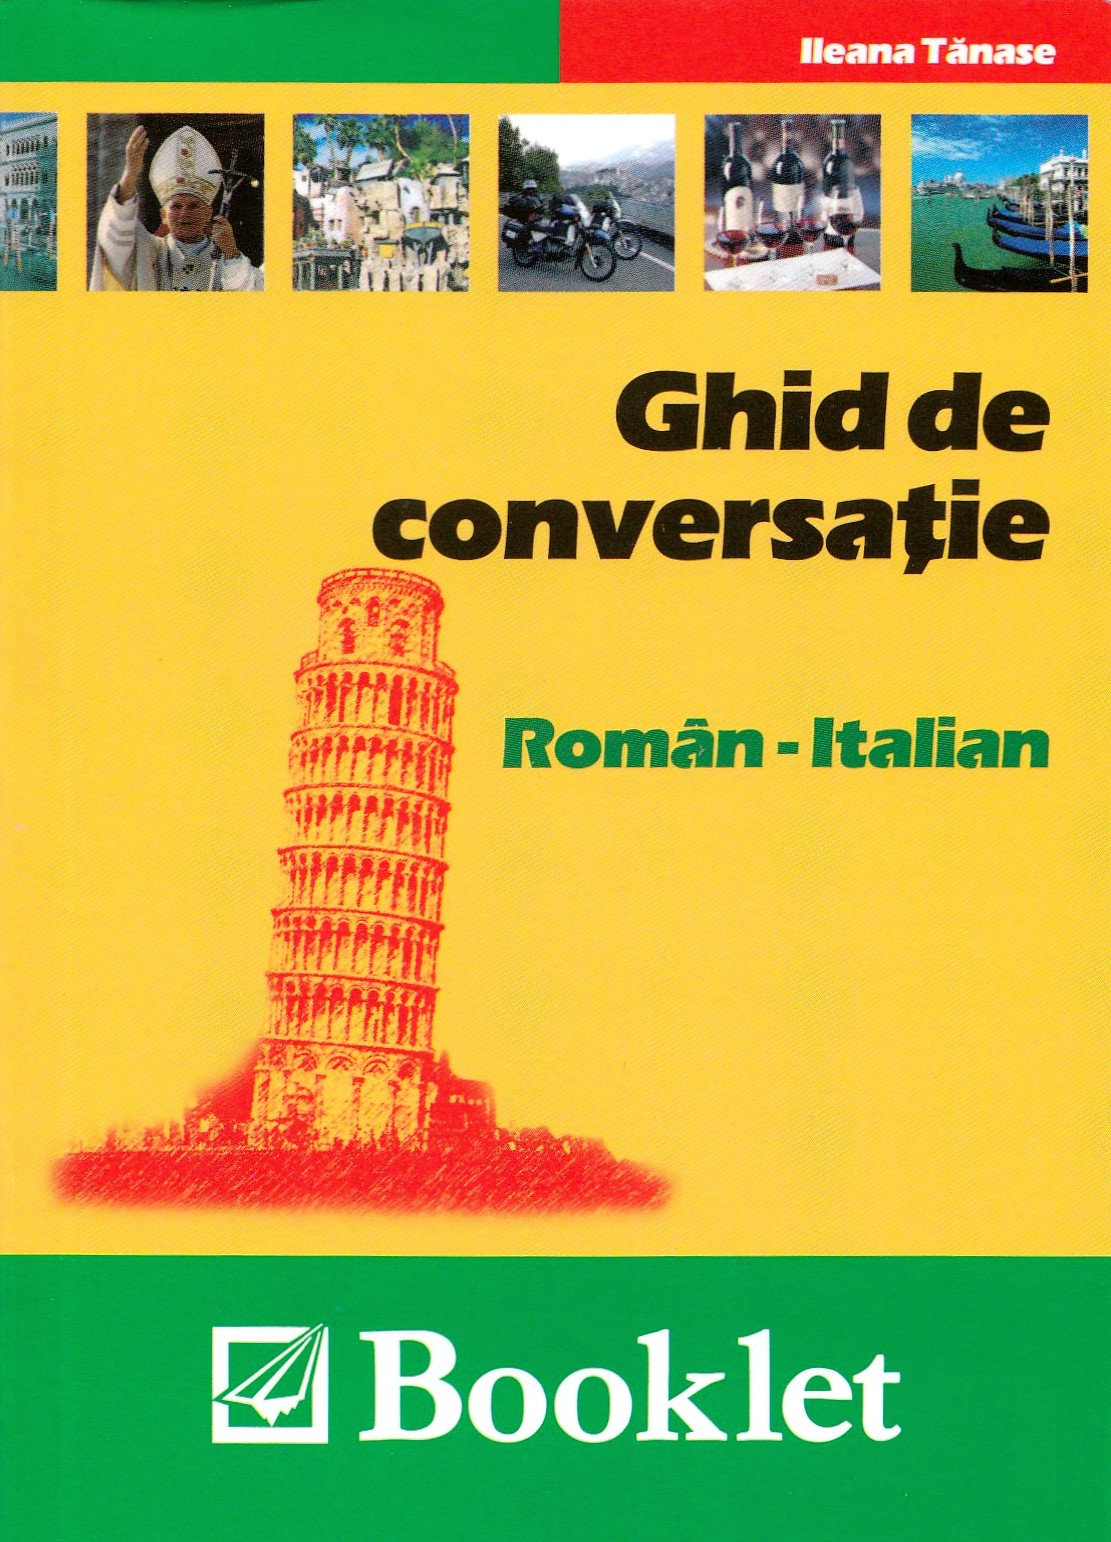 Ghid de conversatie roman-italian - Ileana Tanase